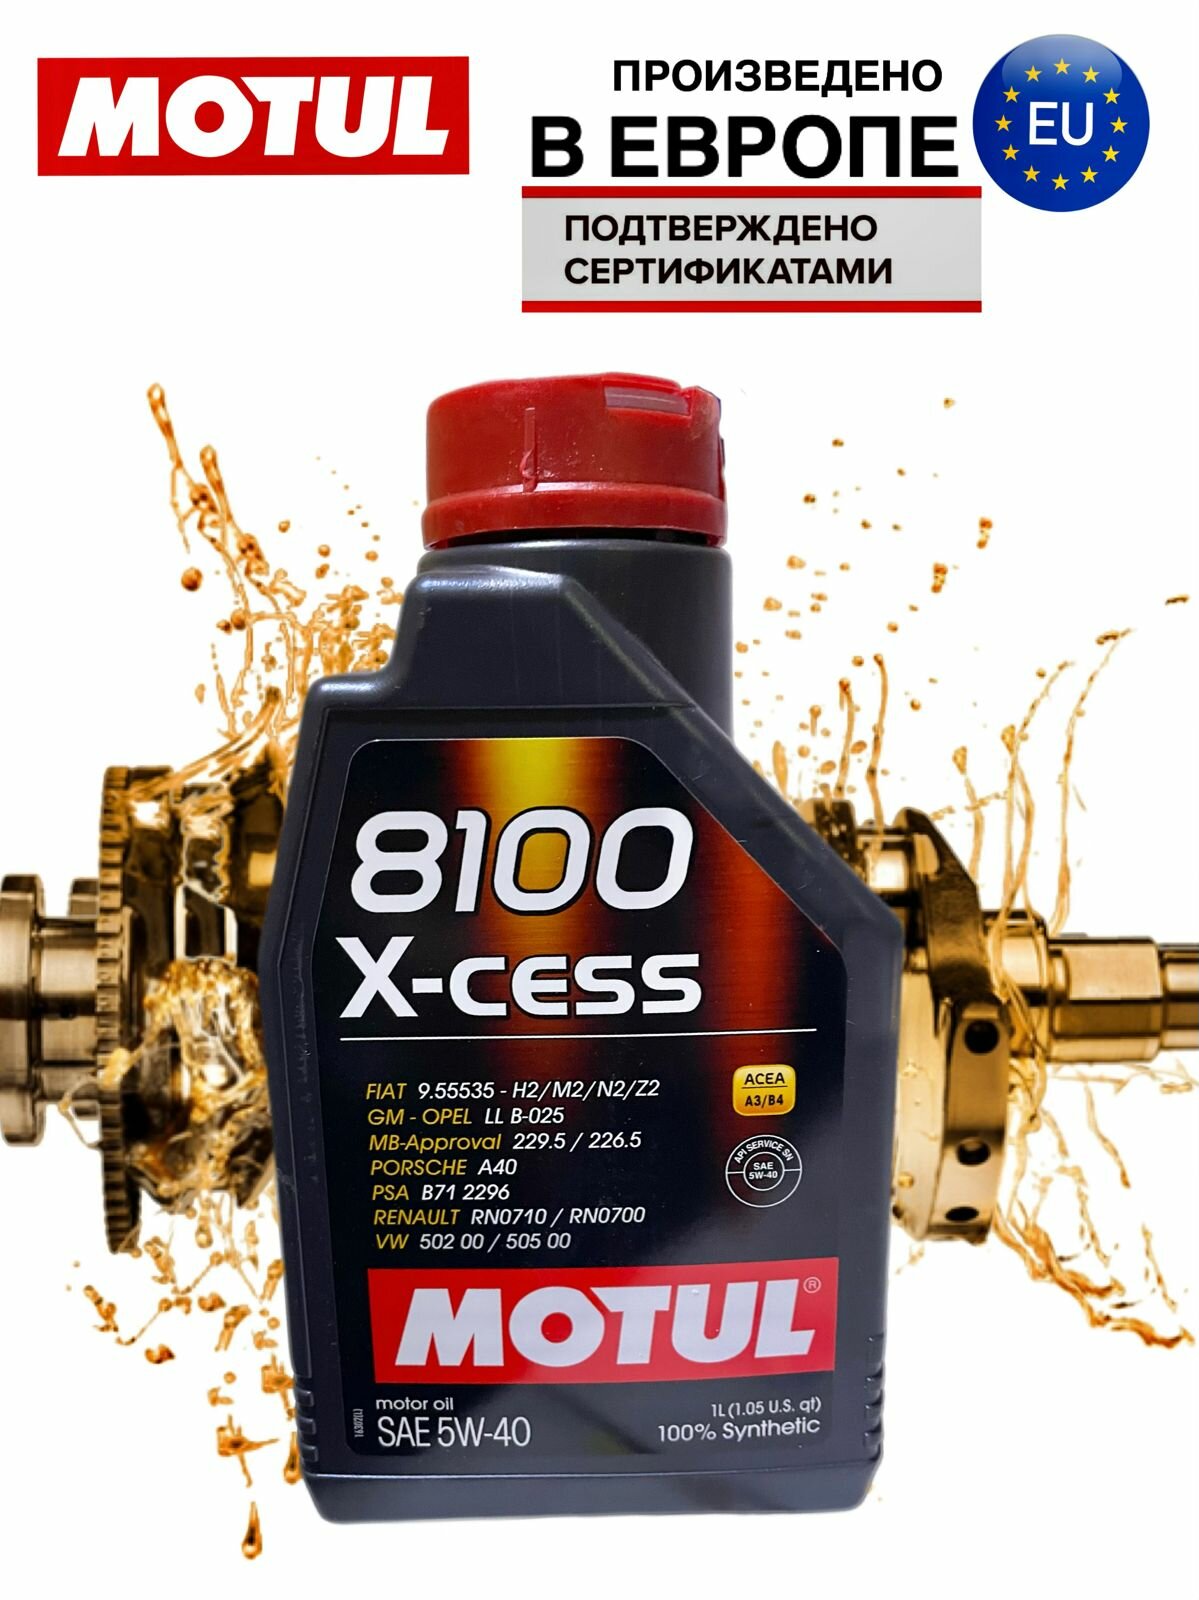 Моторное масло MOTUL 8100 X-CESS 5W-40 1 литр